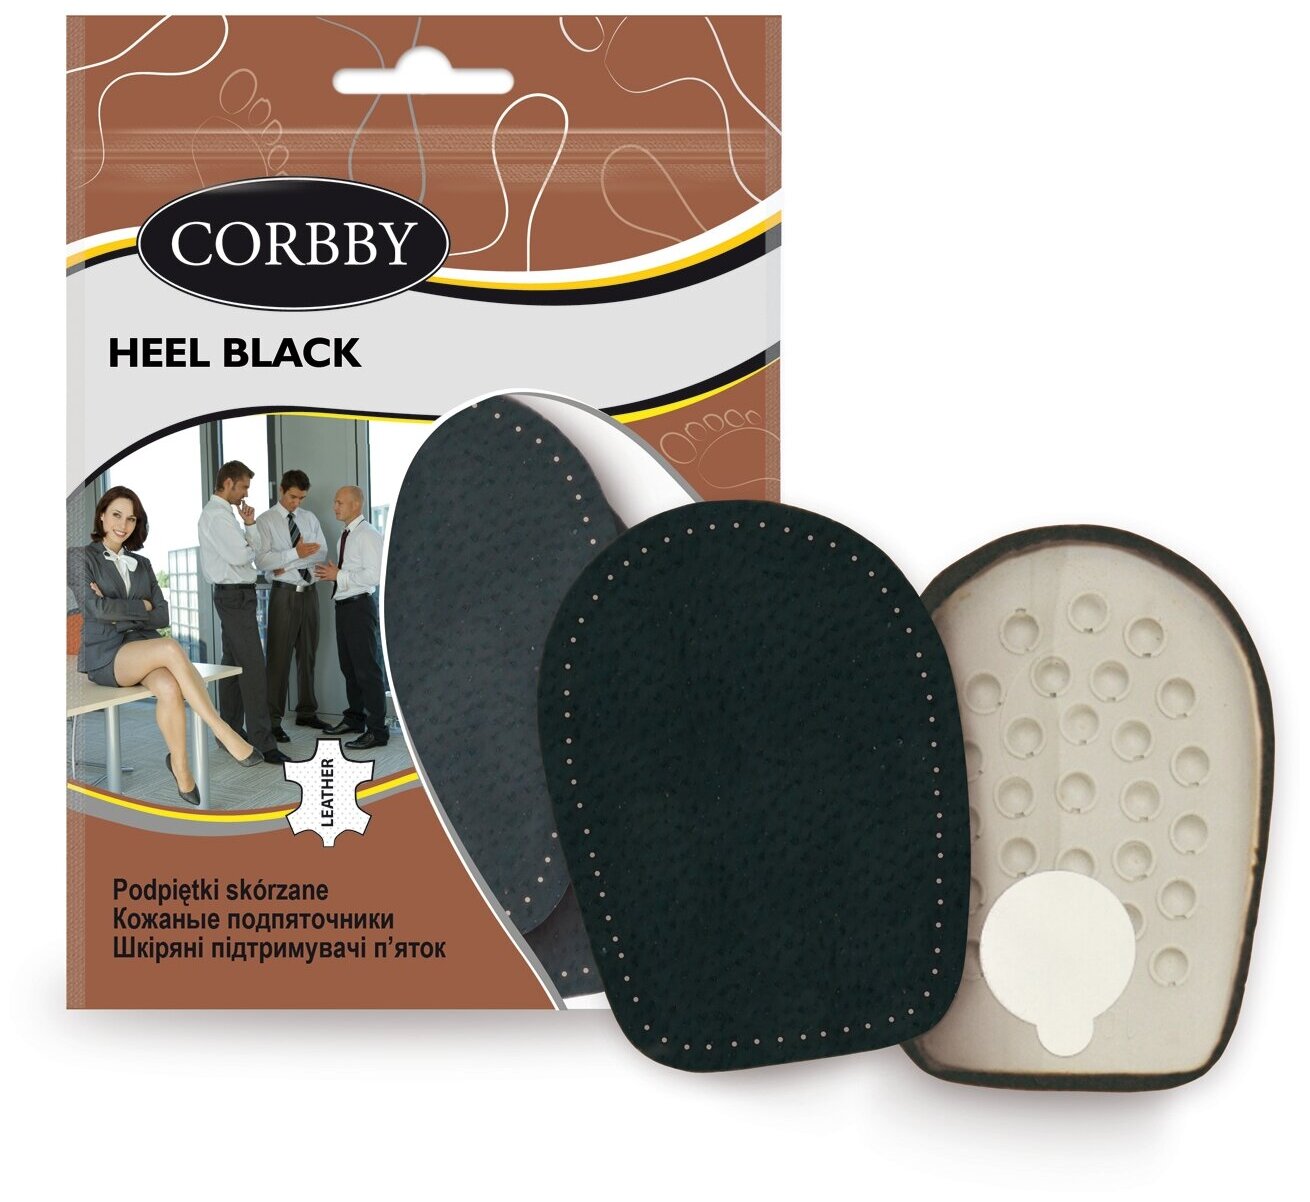 Corbby HALF BLACK полустельки под мысок из высококачественной натуральной кожи. Размер 41/42